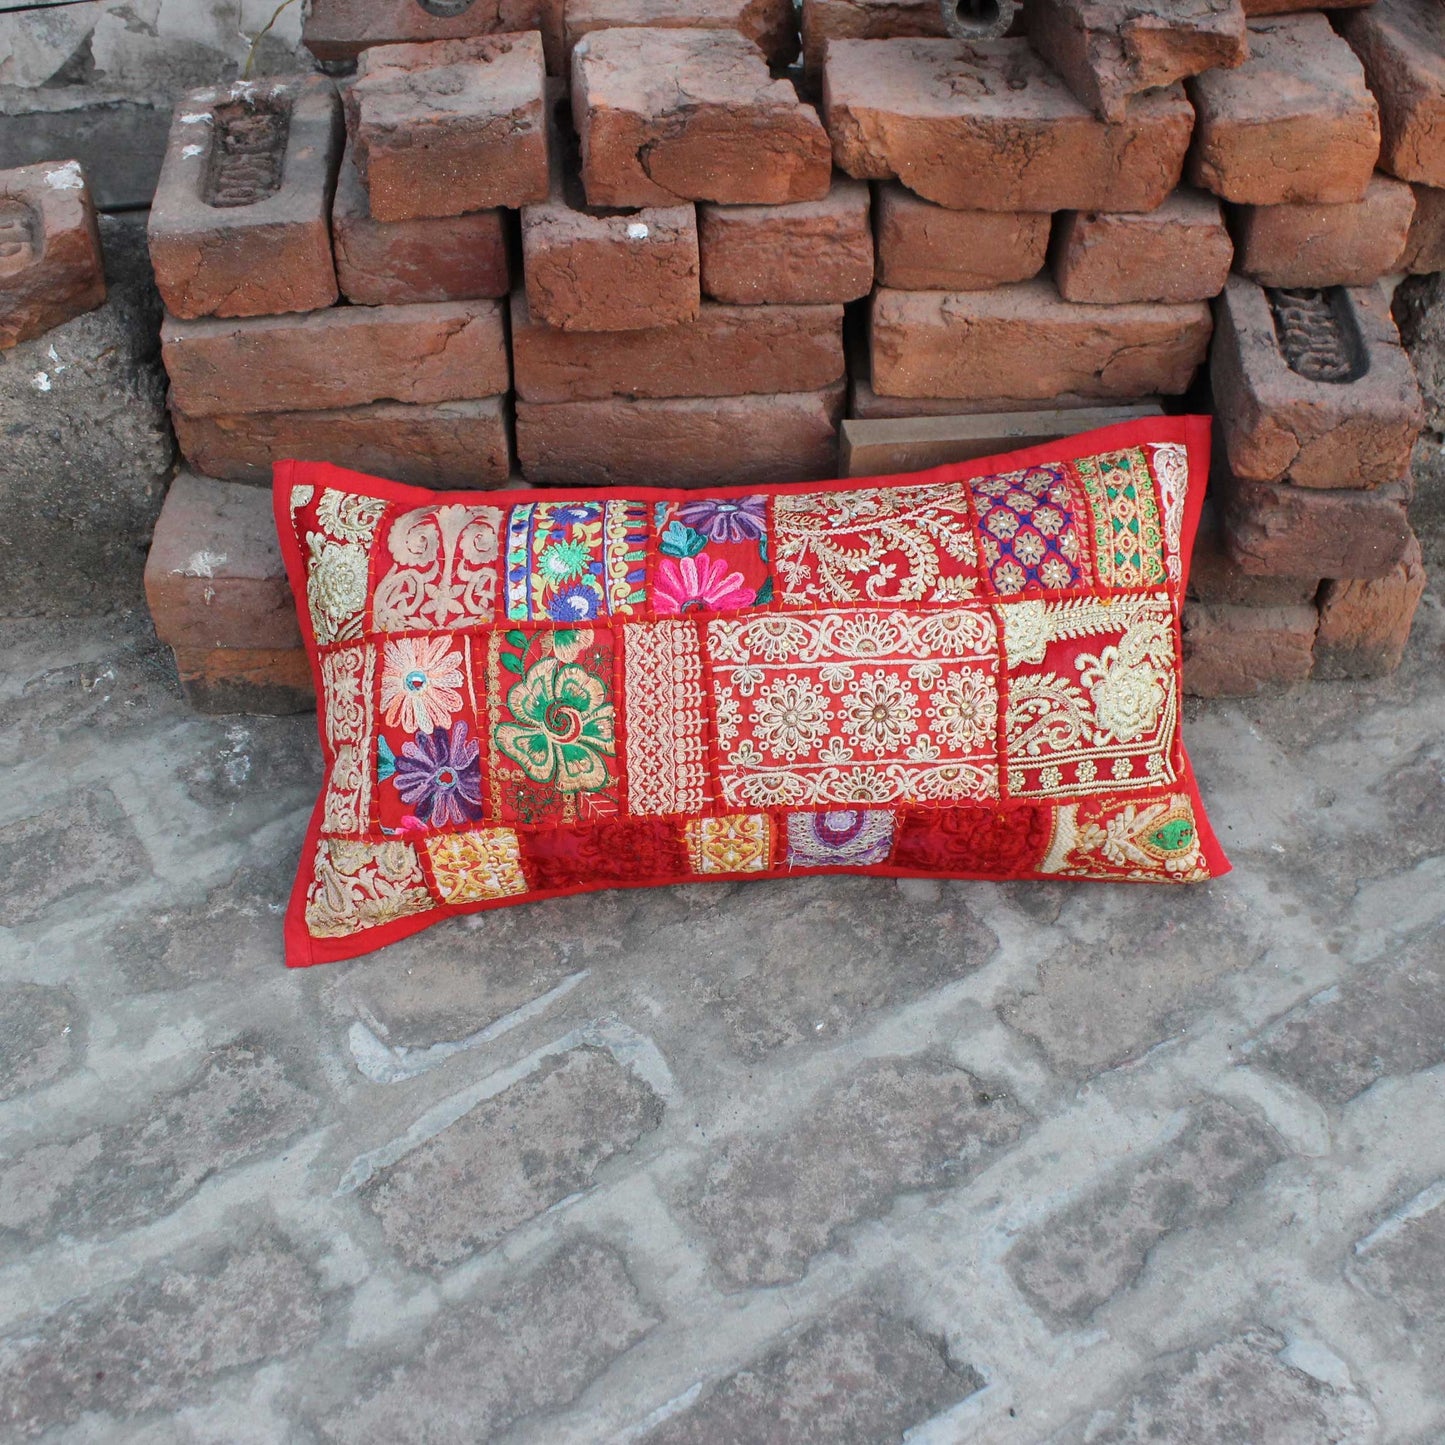 12x24 Boho pillow cover, Red bohemian decorative pillow, Boho home decor,Throw Traditional,Decorative boho pillow,Handmade Farmhouse cushion